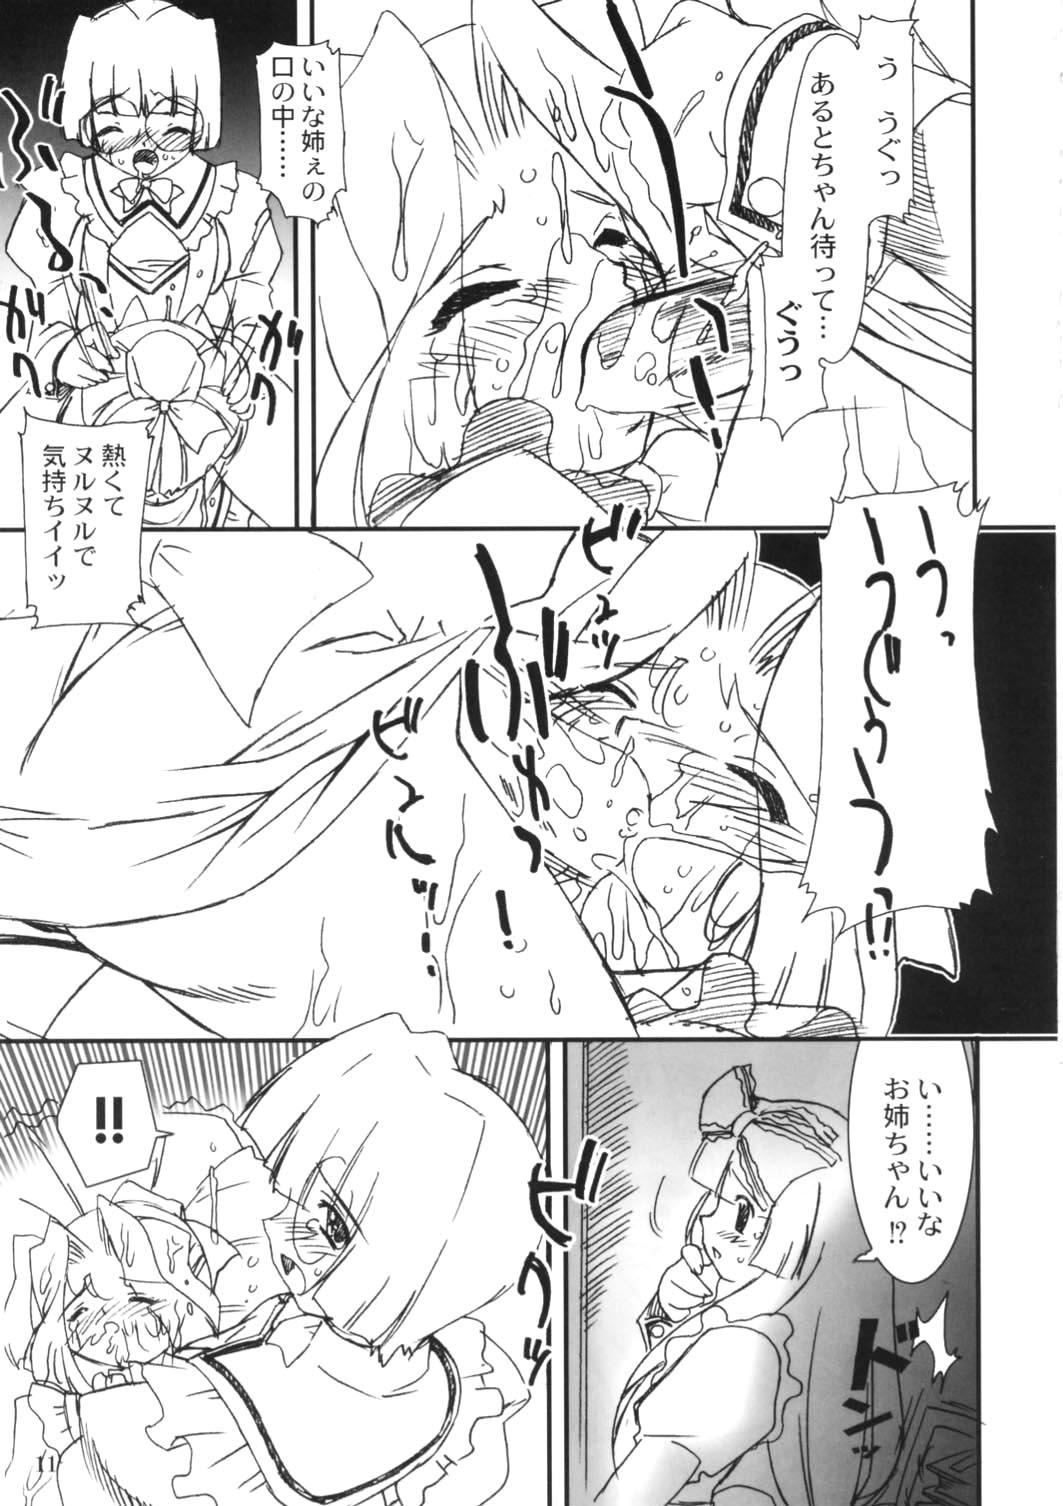 Big Dick Himitsu Toshokan - Kokoro library Shemale - Page 12